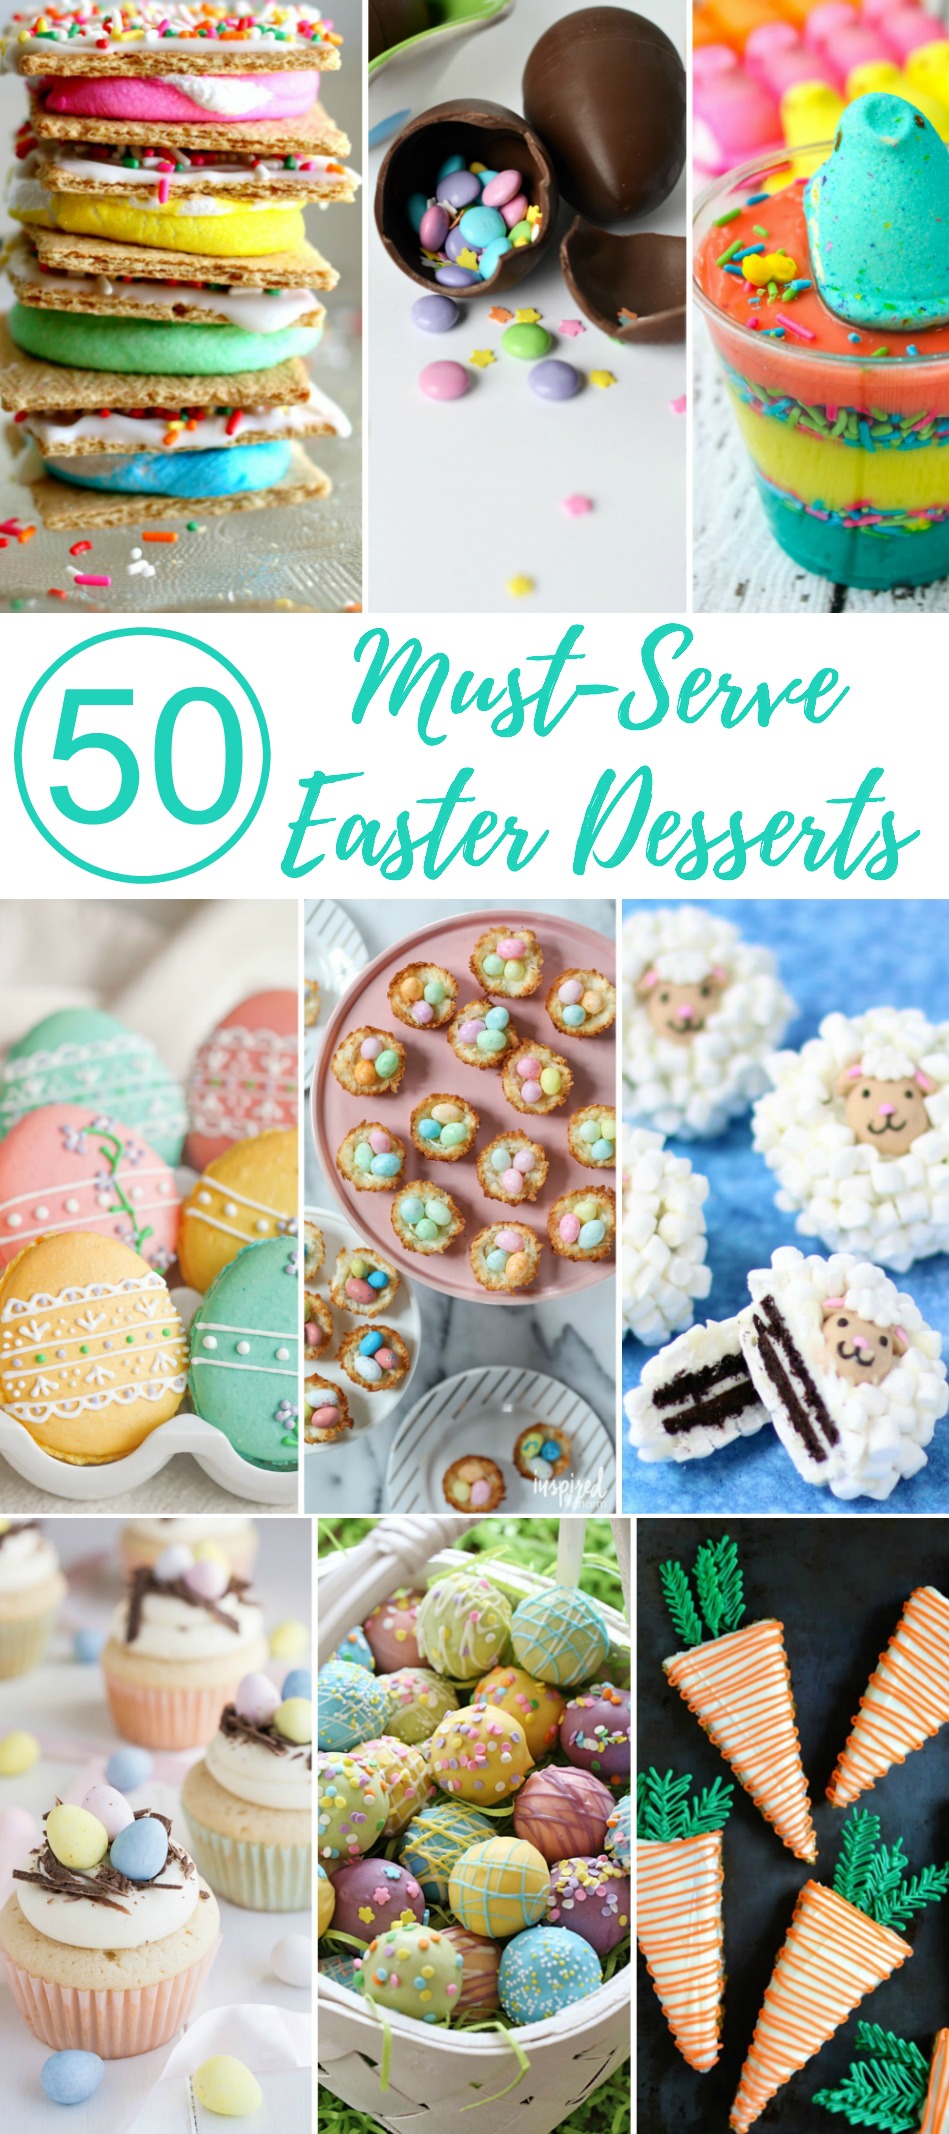 50 Must-Serve Easter Desserts